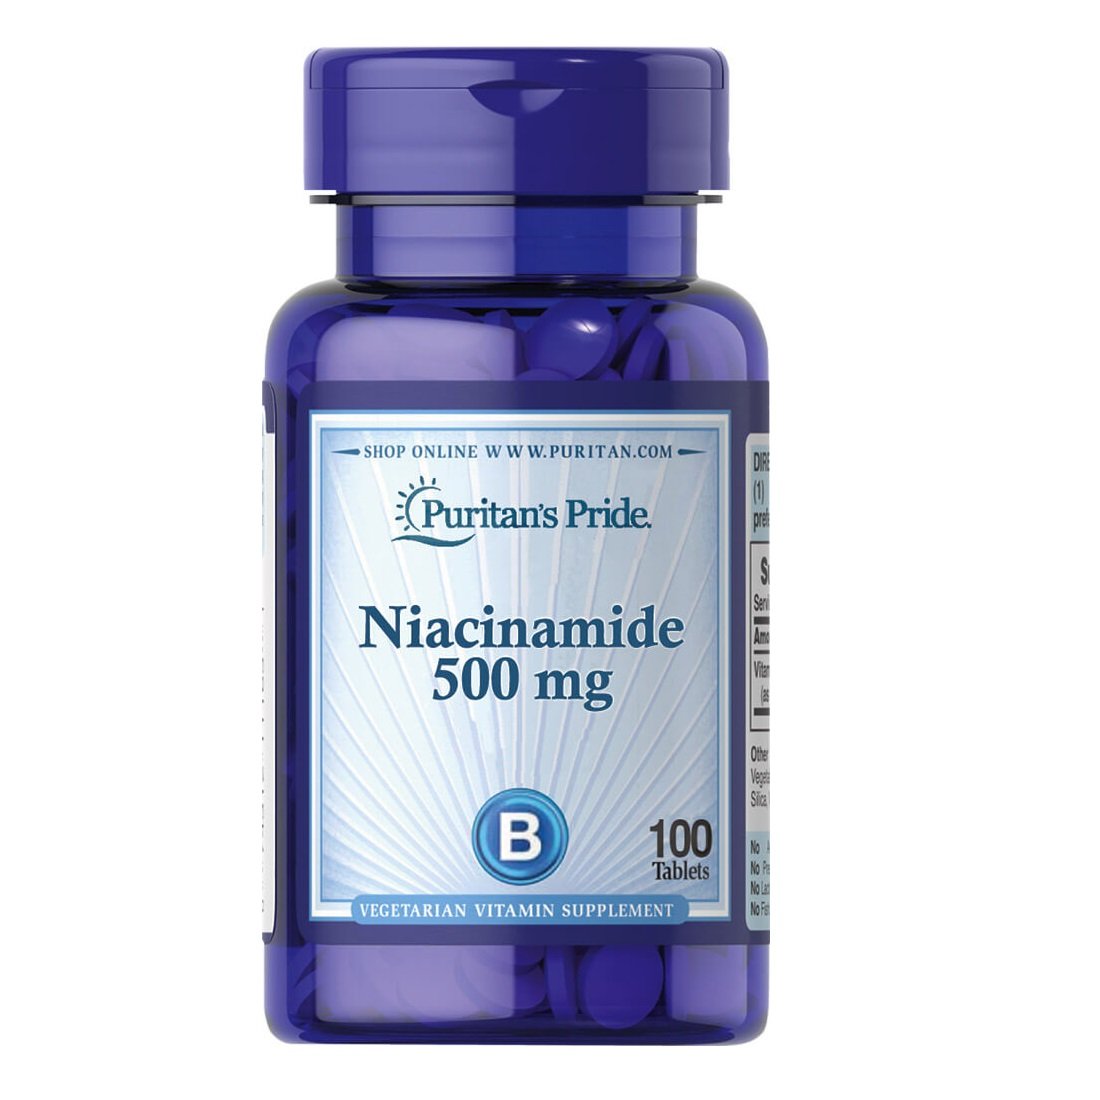 Витамины и минералы Puritan's Pride Niacinamide 500 mg, 100 таблеток,  мл, Puritan's Pride. Витамины и минералы. Поддержание здоровья Укрепление иммунитета 